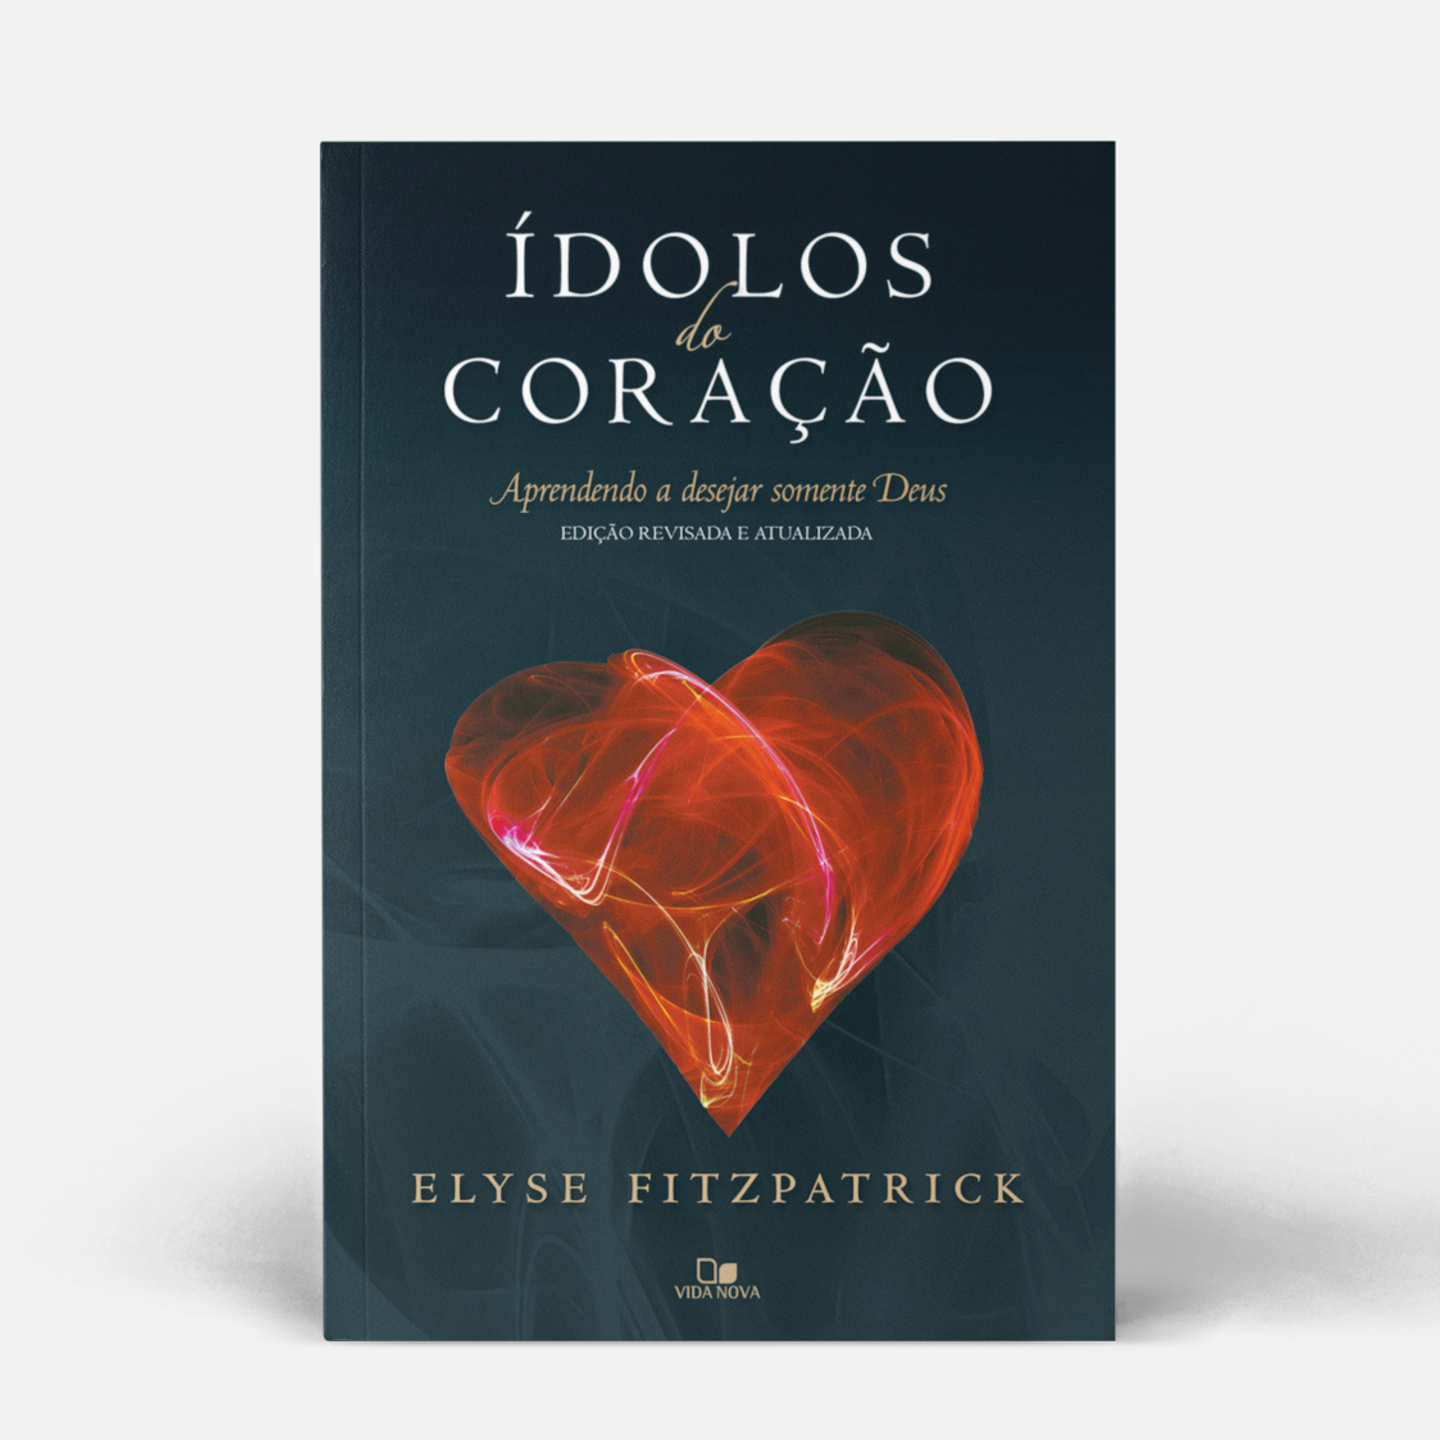 Ídolos do coração - Edição revisada e atualizada